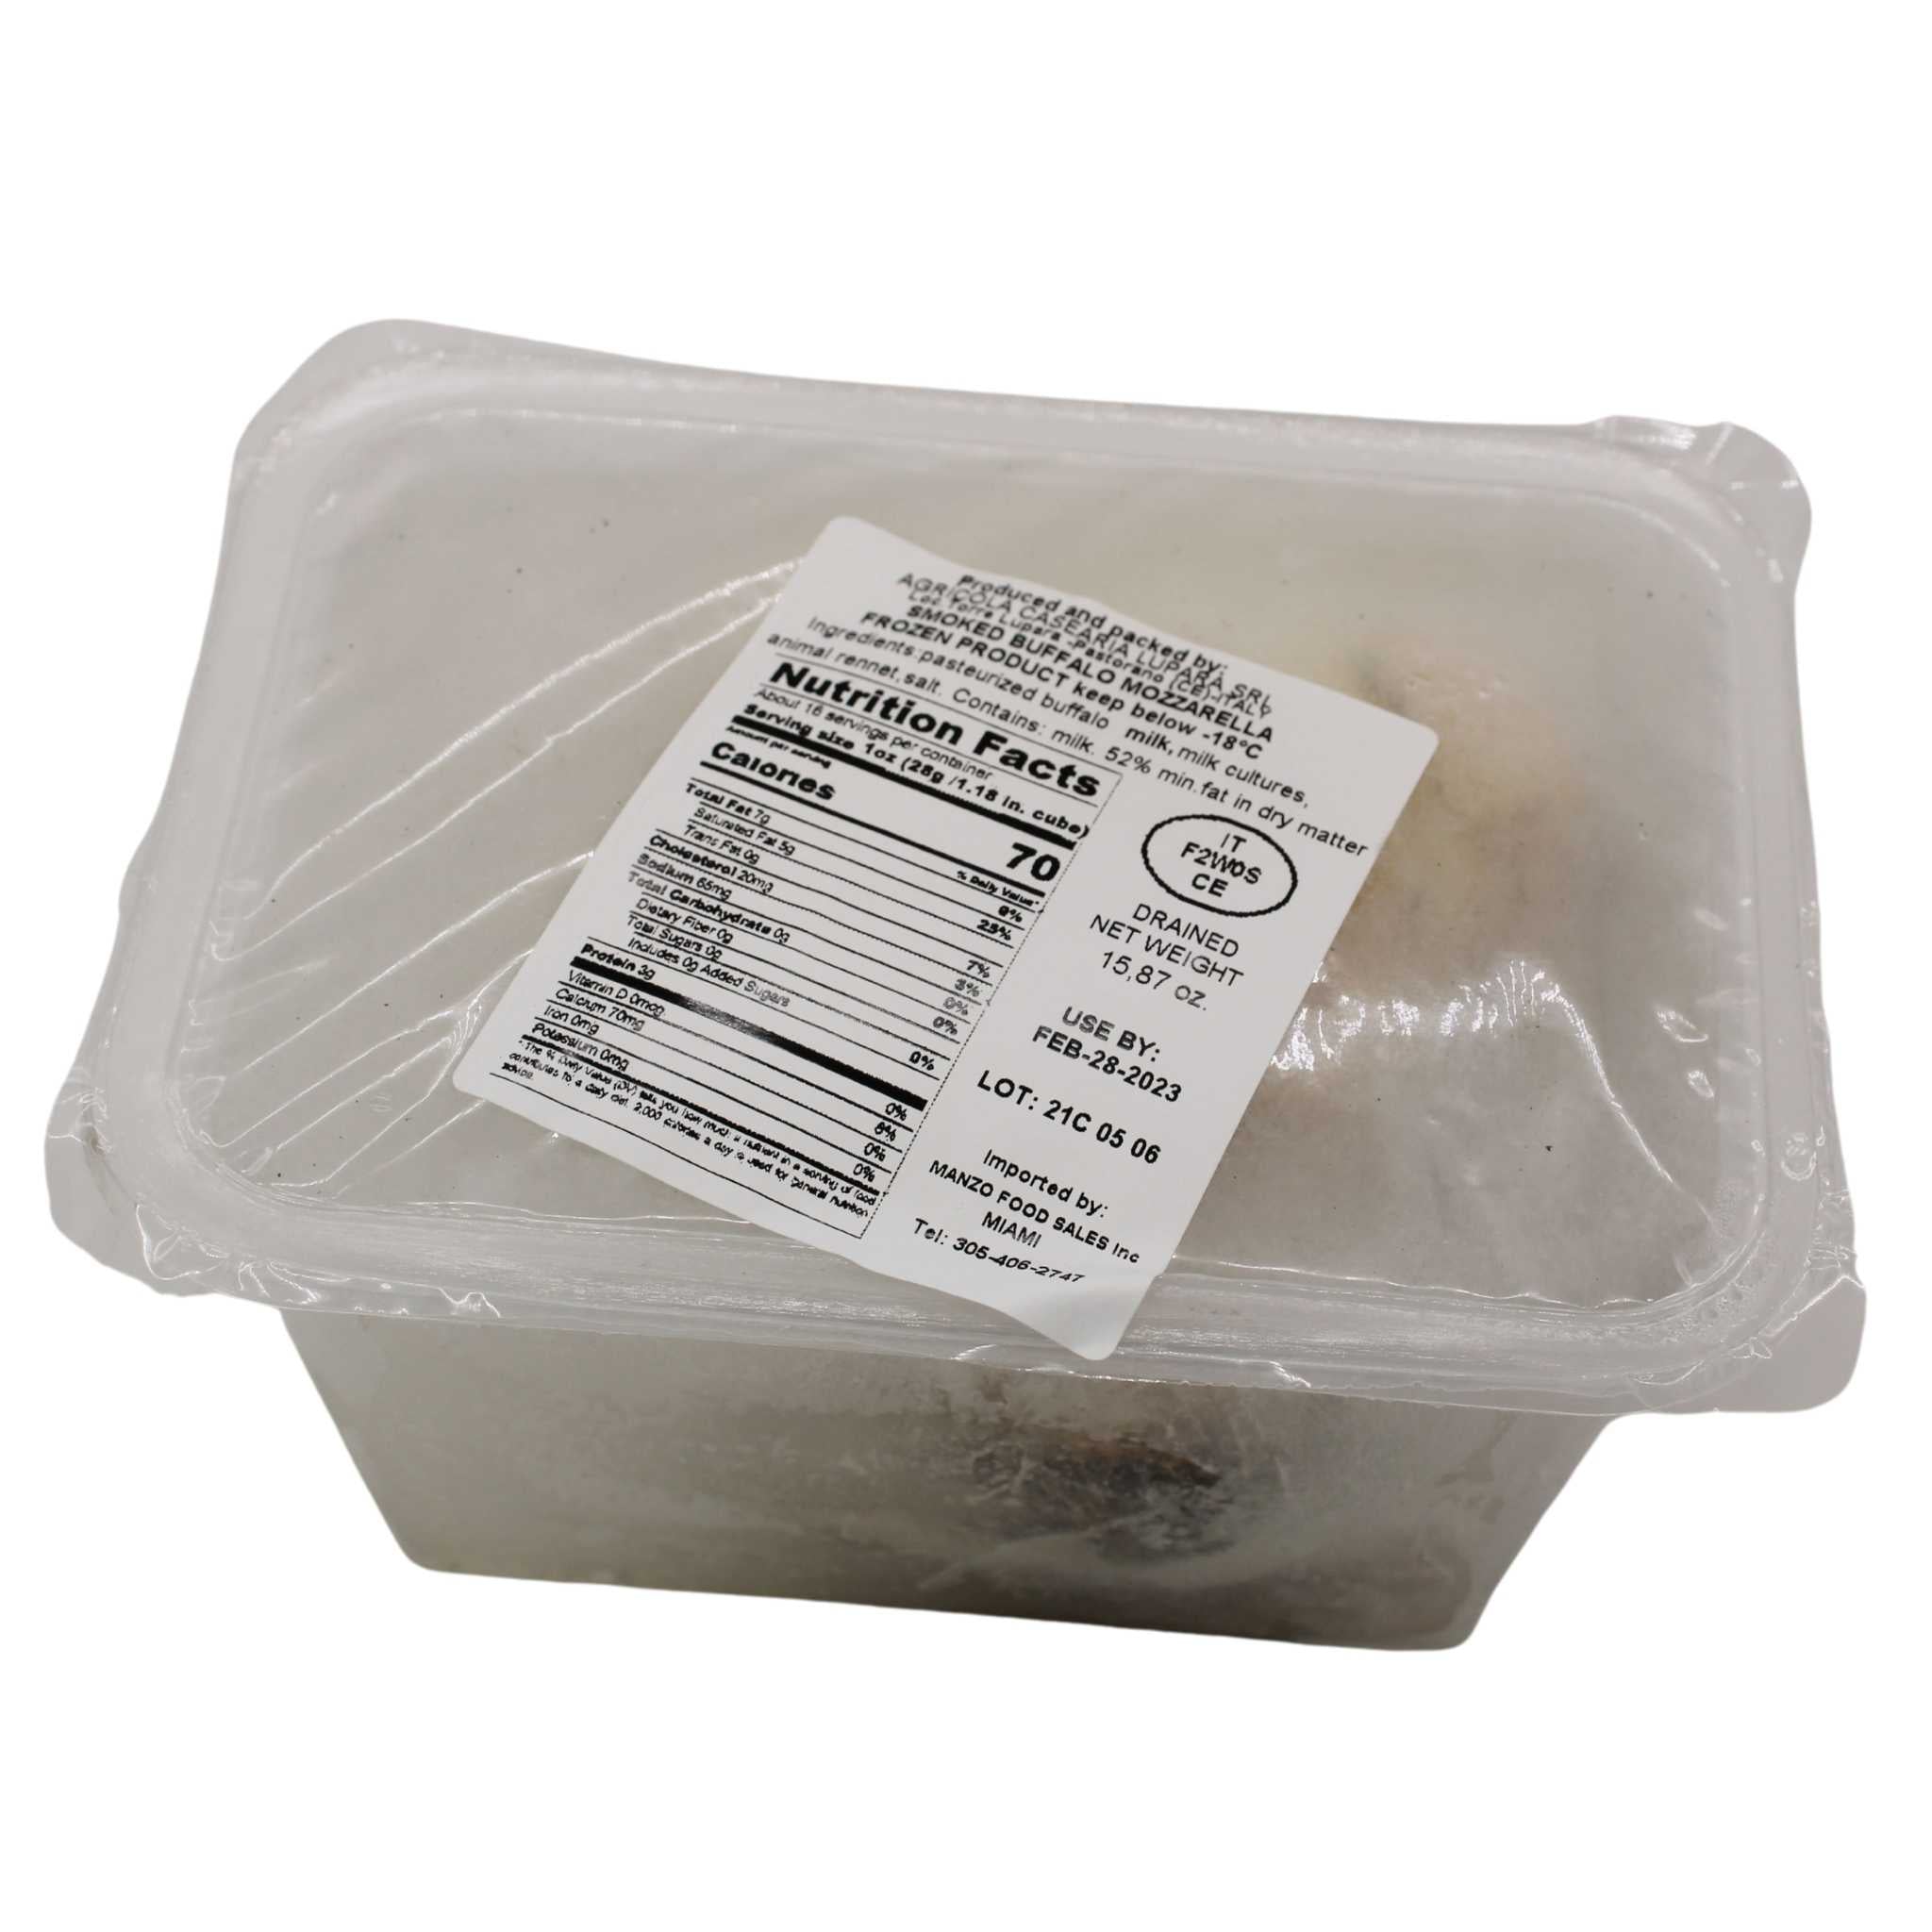 One container of Frozen Lupara Smoked Buffalo Mozzarella